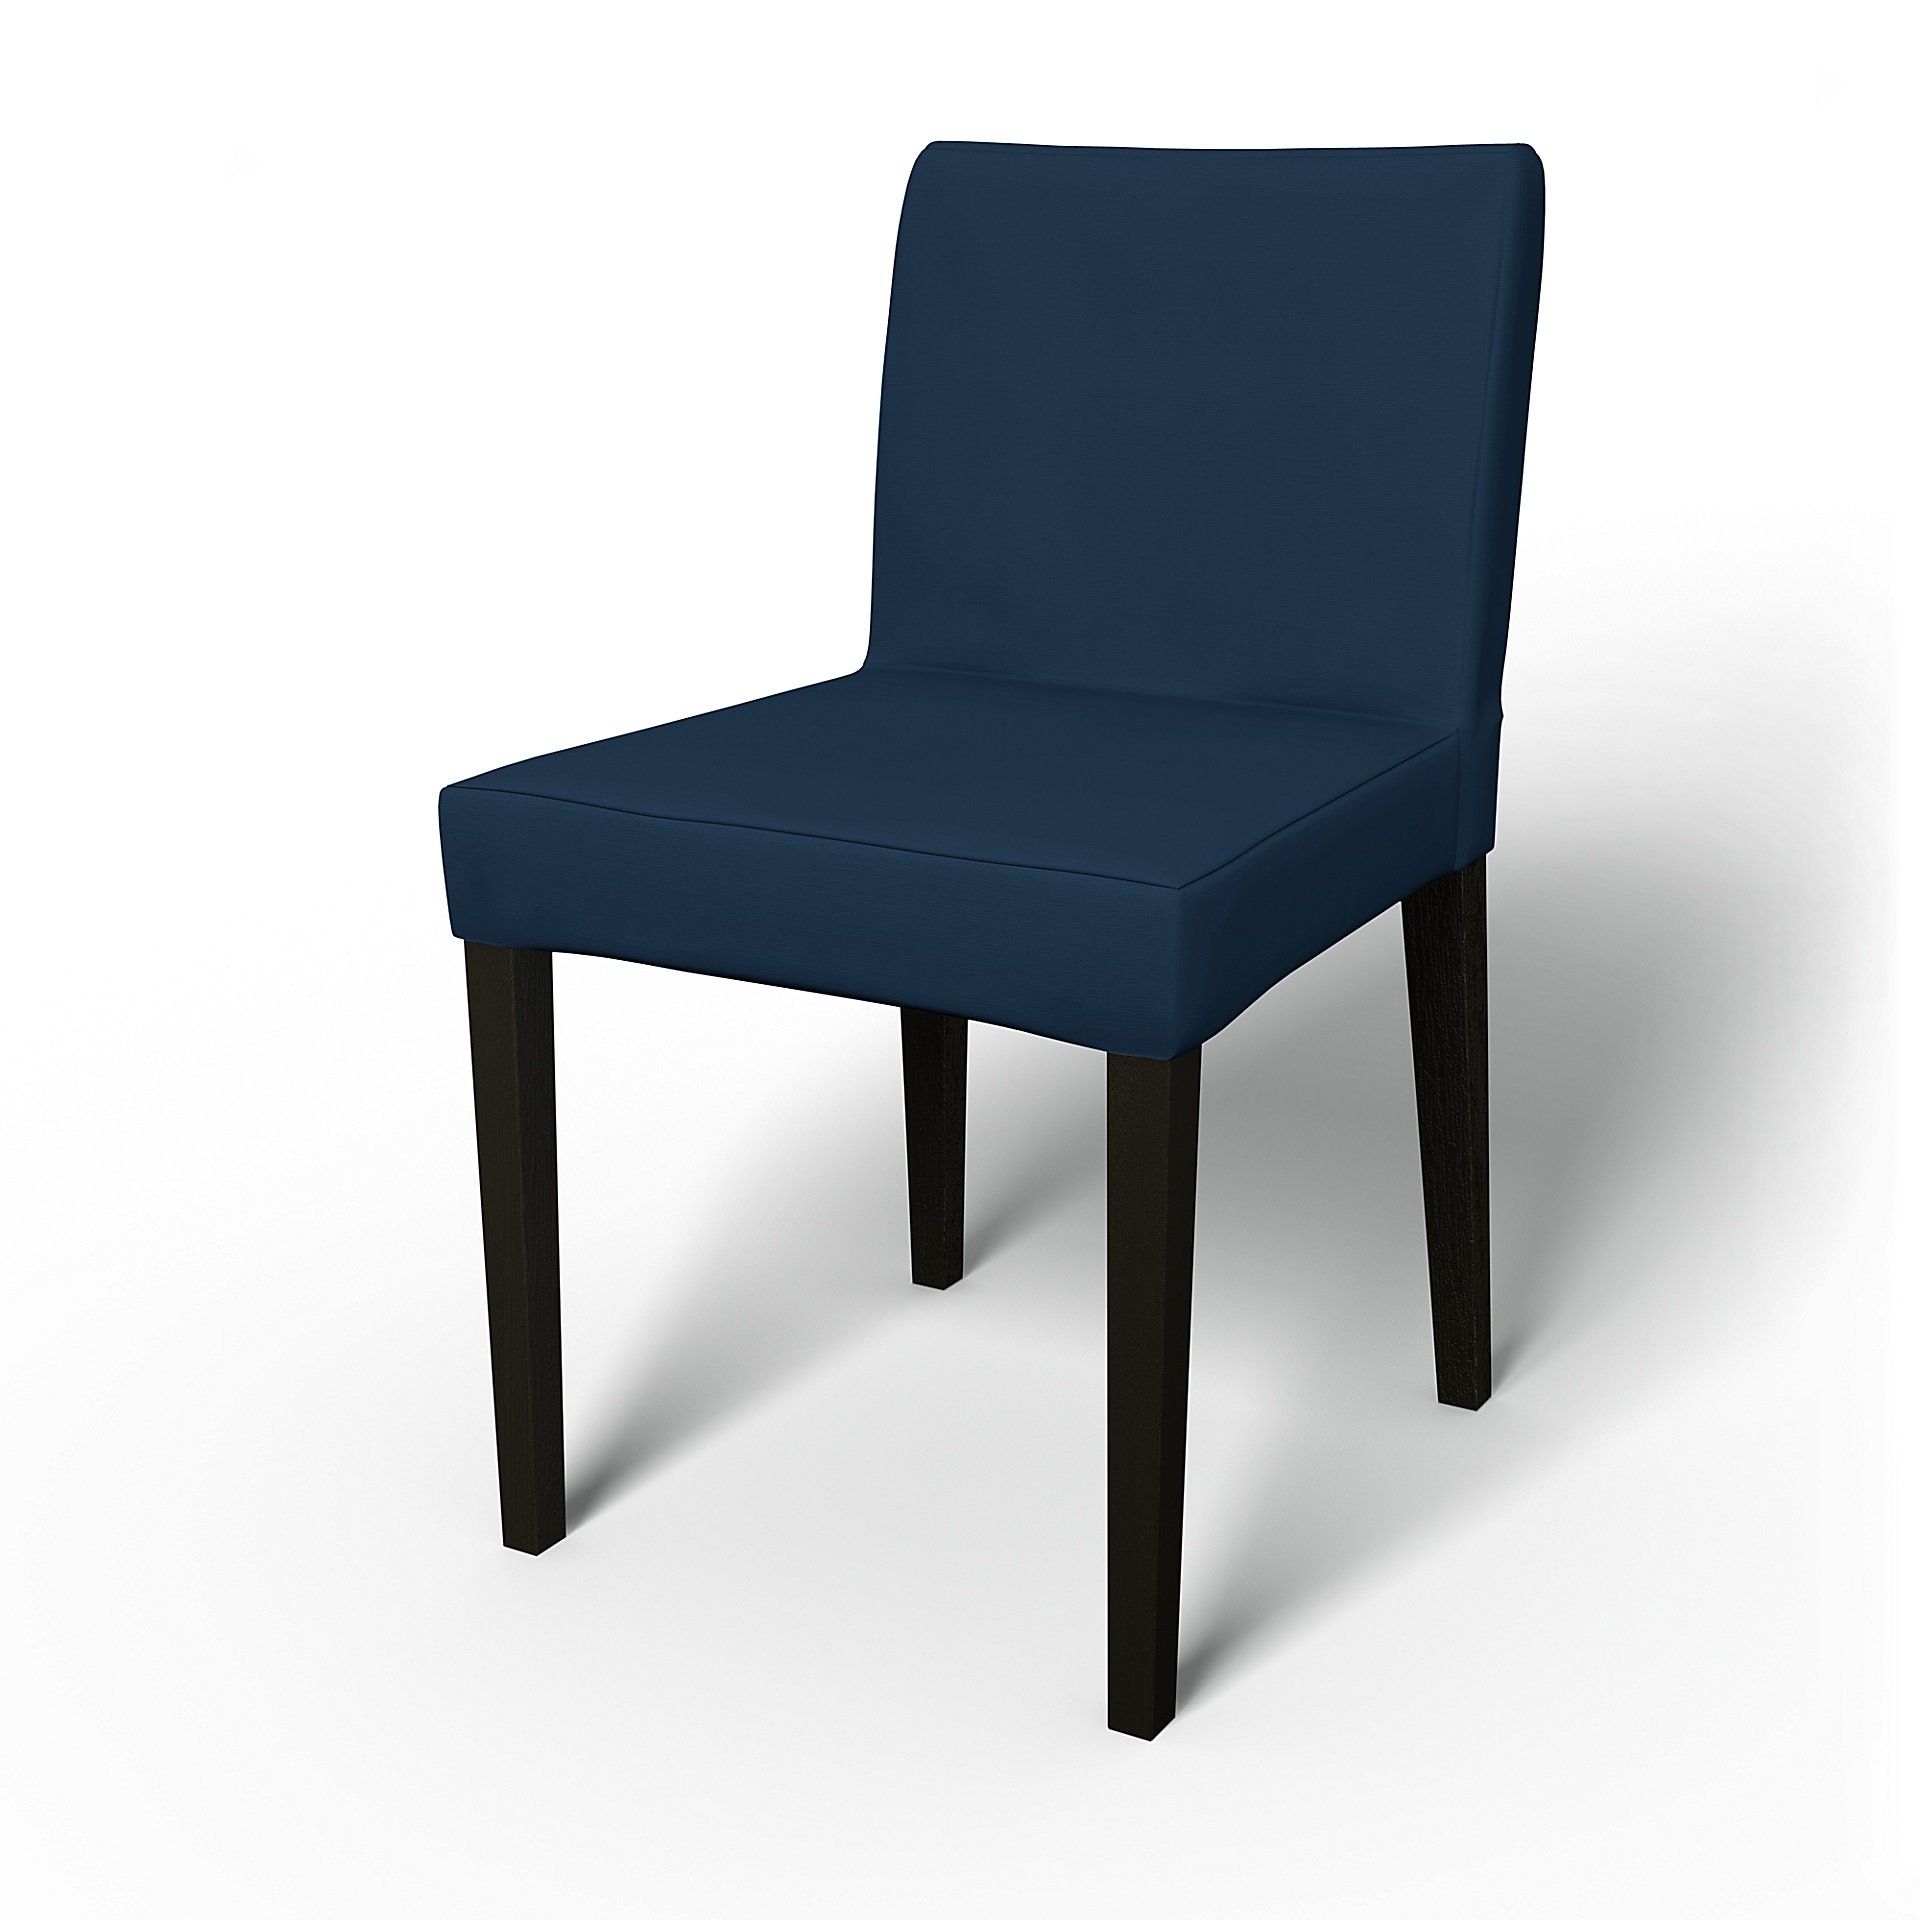 IKEA - Henrik Dining Chair Cover, Deep Navy Blue, Cotton - Bemz